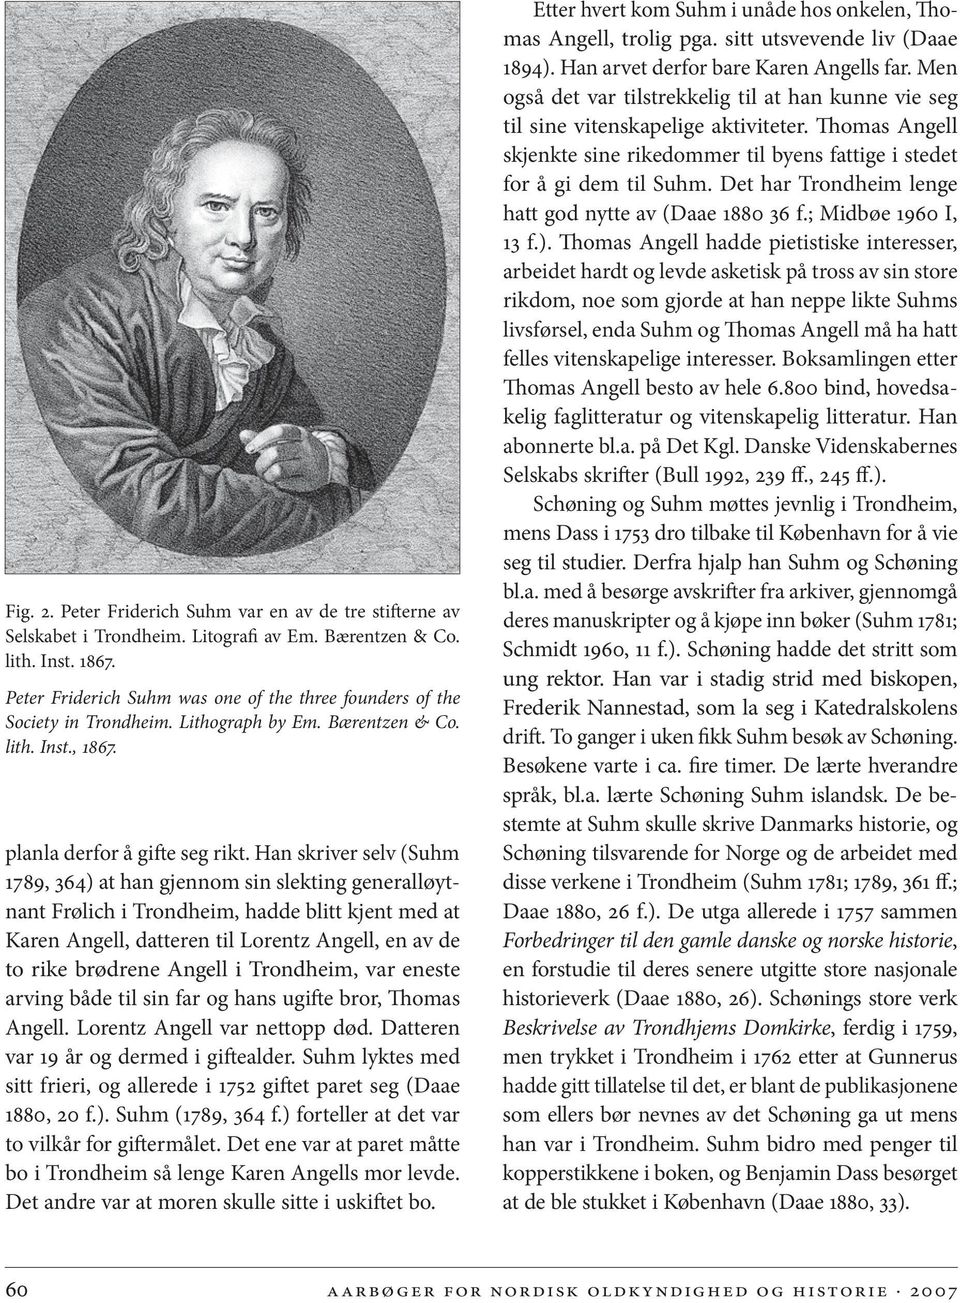 Han skriver selv (Suhm 1789, 364) at han gjennom sin slekting generalløytnant Frølich i Trondheim, hadde blitt kjent med at Karen Angell, datteren til Lorentz Angell, en av de to rike brødrene Angell